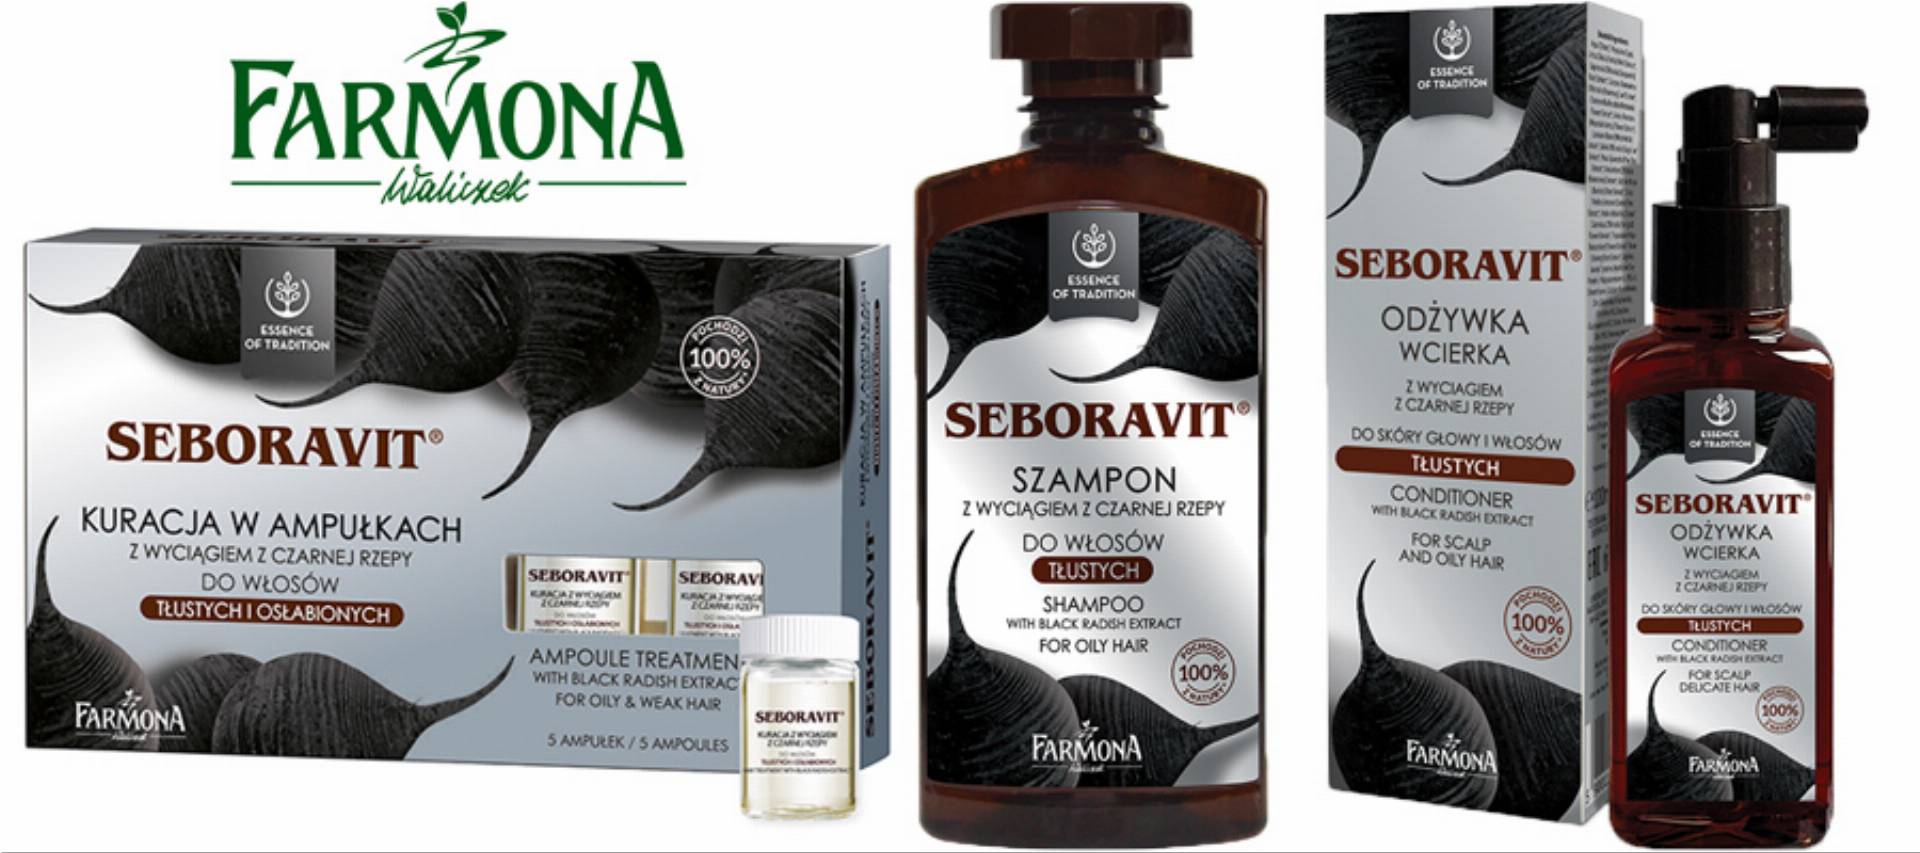 farmona seboravit odżywka-wcierka do skóry głowy i włosów tłustych